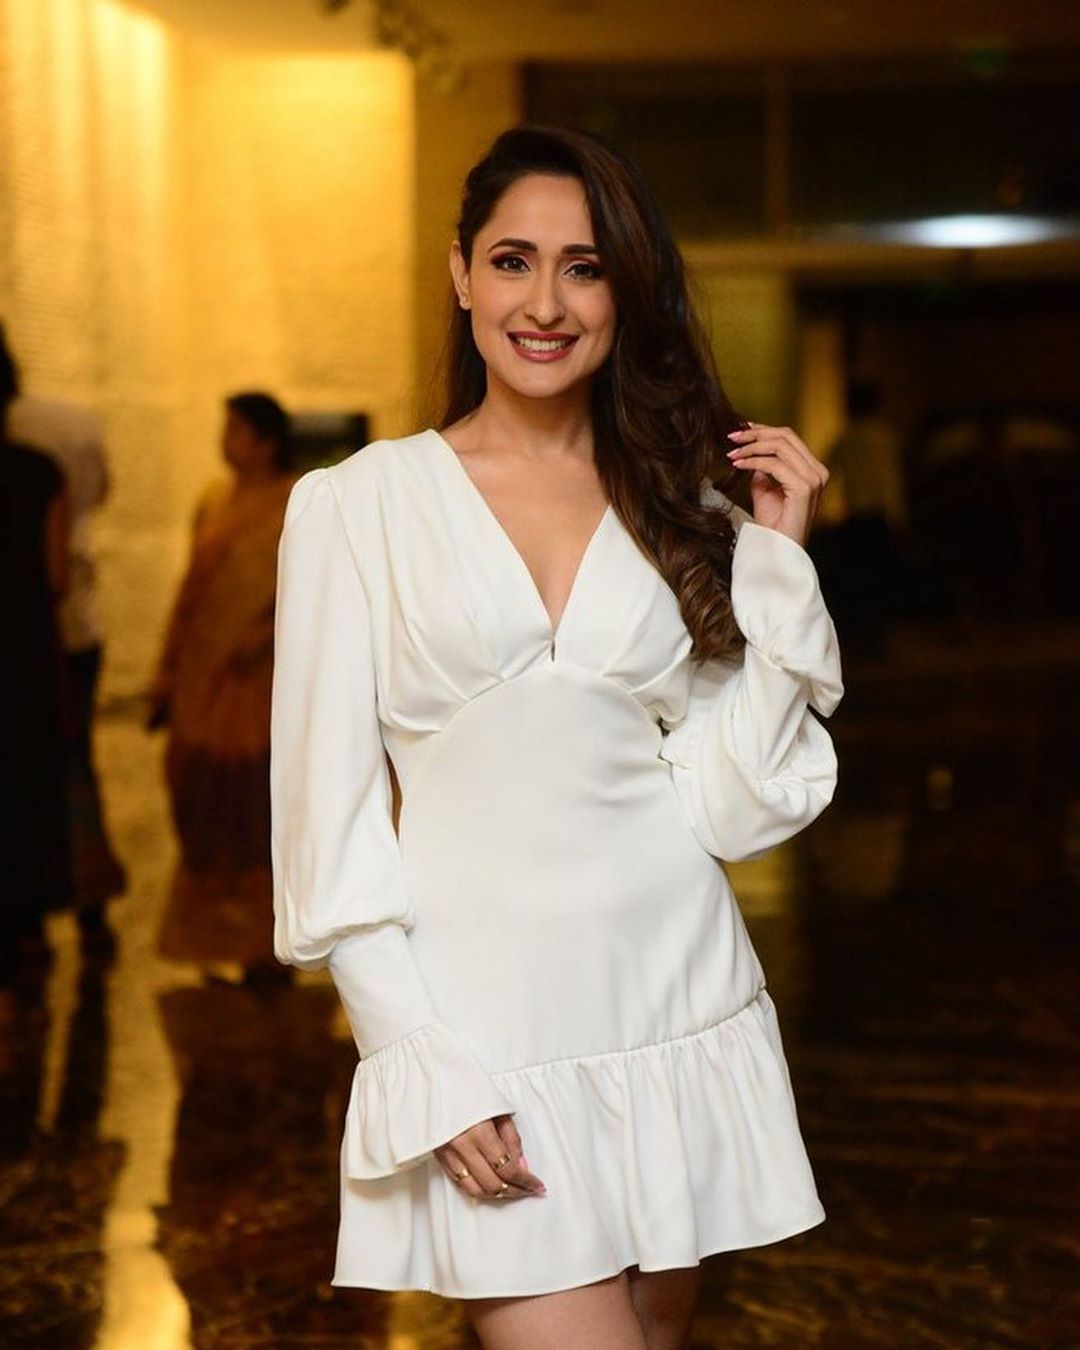 Pragya Jaiswal Looking Hot In White Bath Robe Look Like Dress